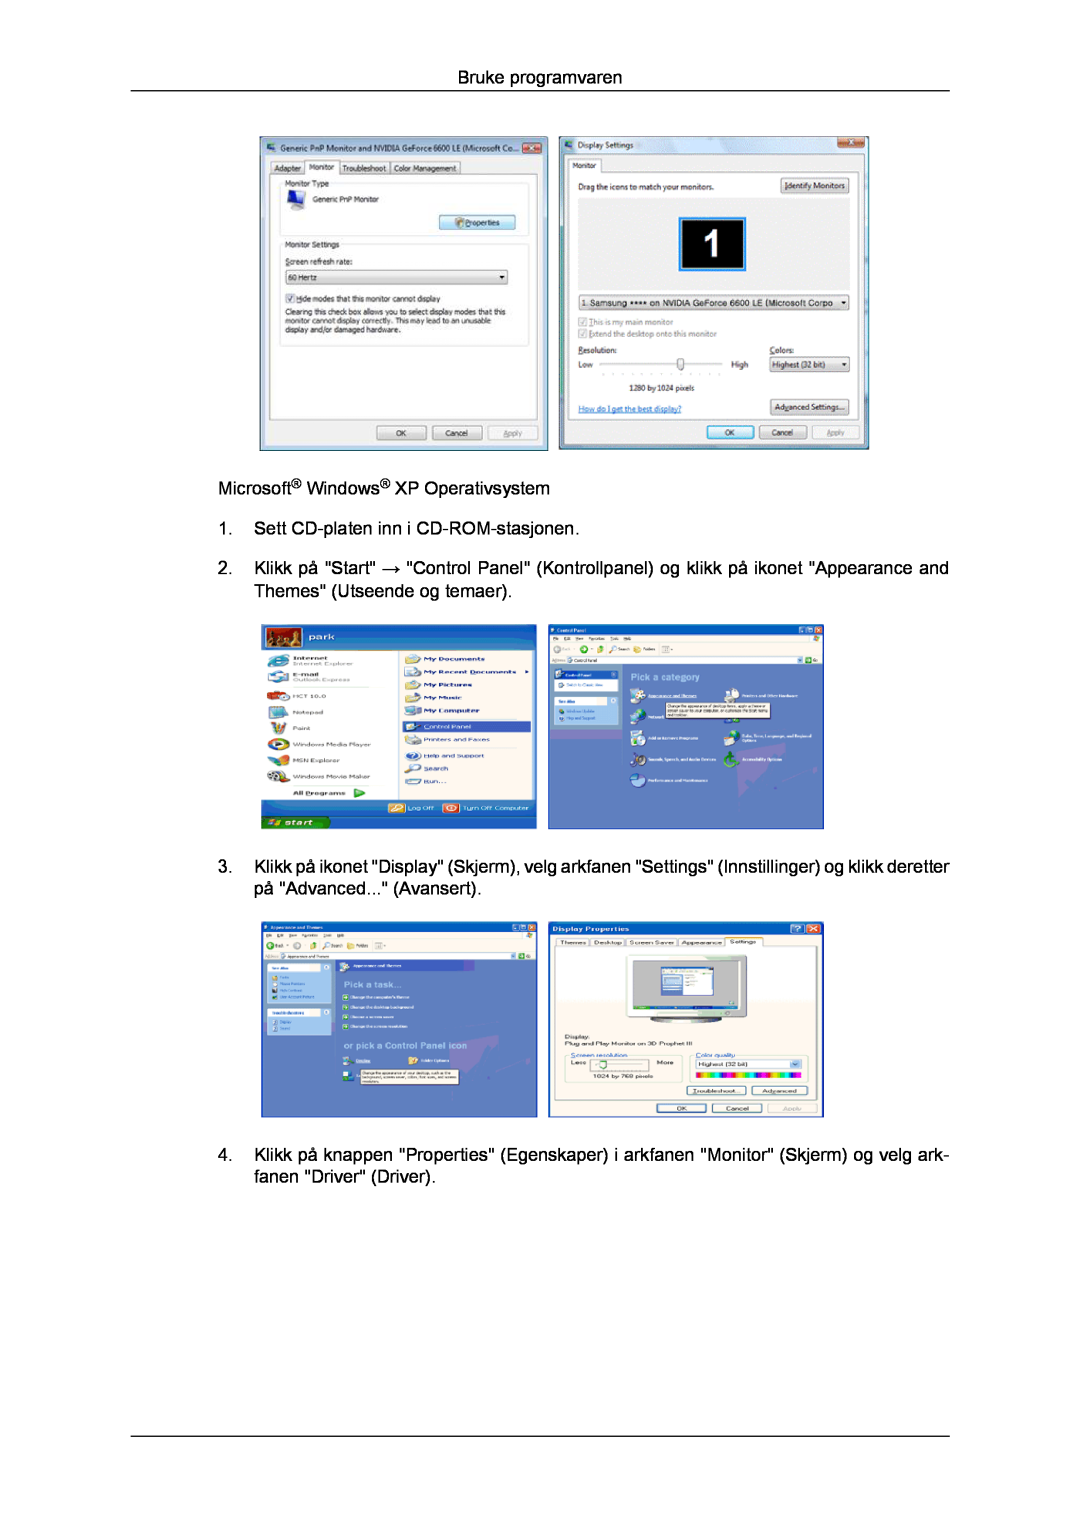 Samsung LH46CRPMBD/EN manual Bruke programvaren Microsoft Windows XP Operativsystem, Sett CD-platen inn i CD-ROM-stasjonen 